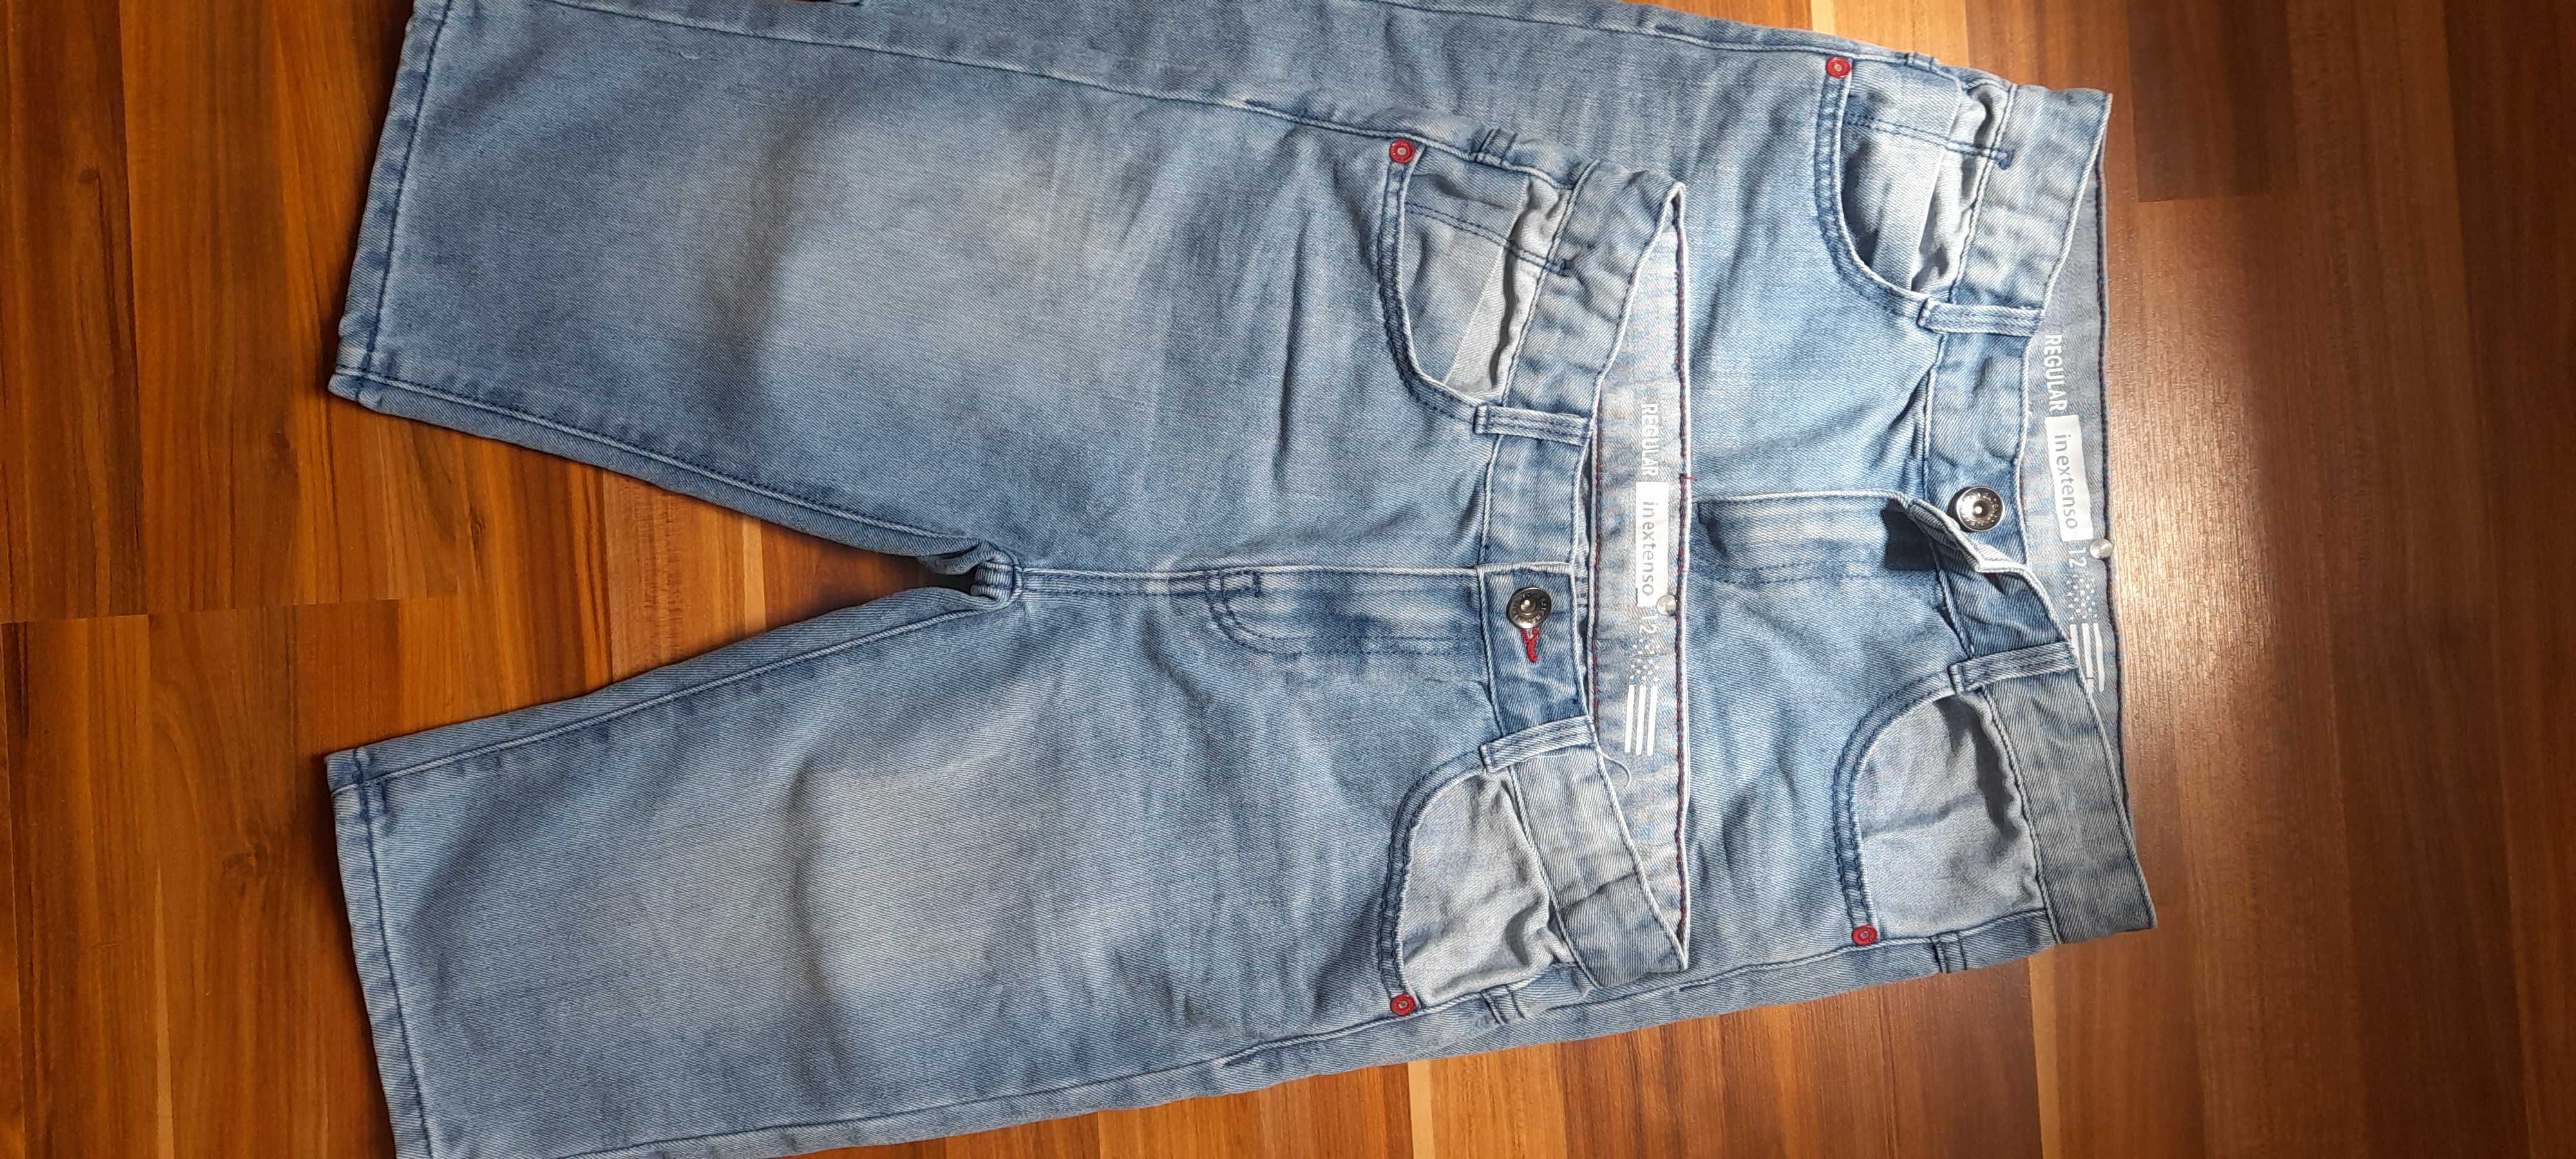 bermudy, szorty jeansowe dla bliźniaków inextenso r12 - 2szt